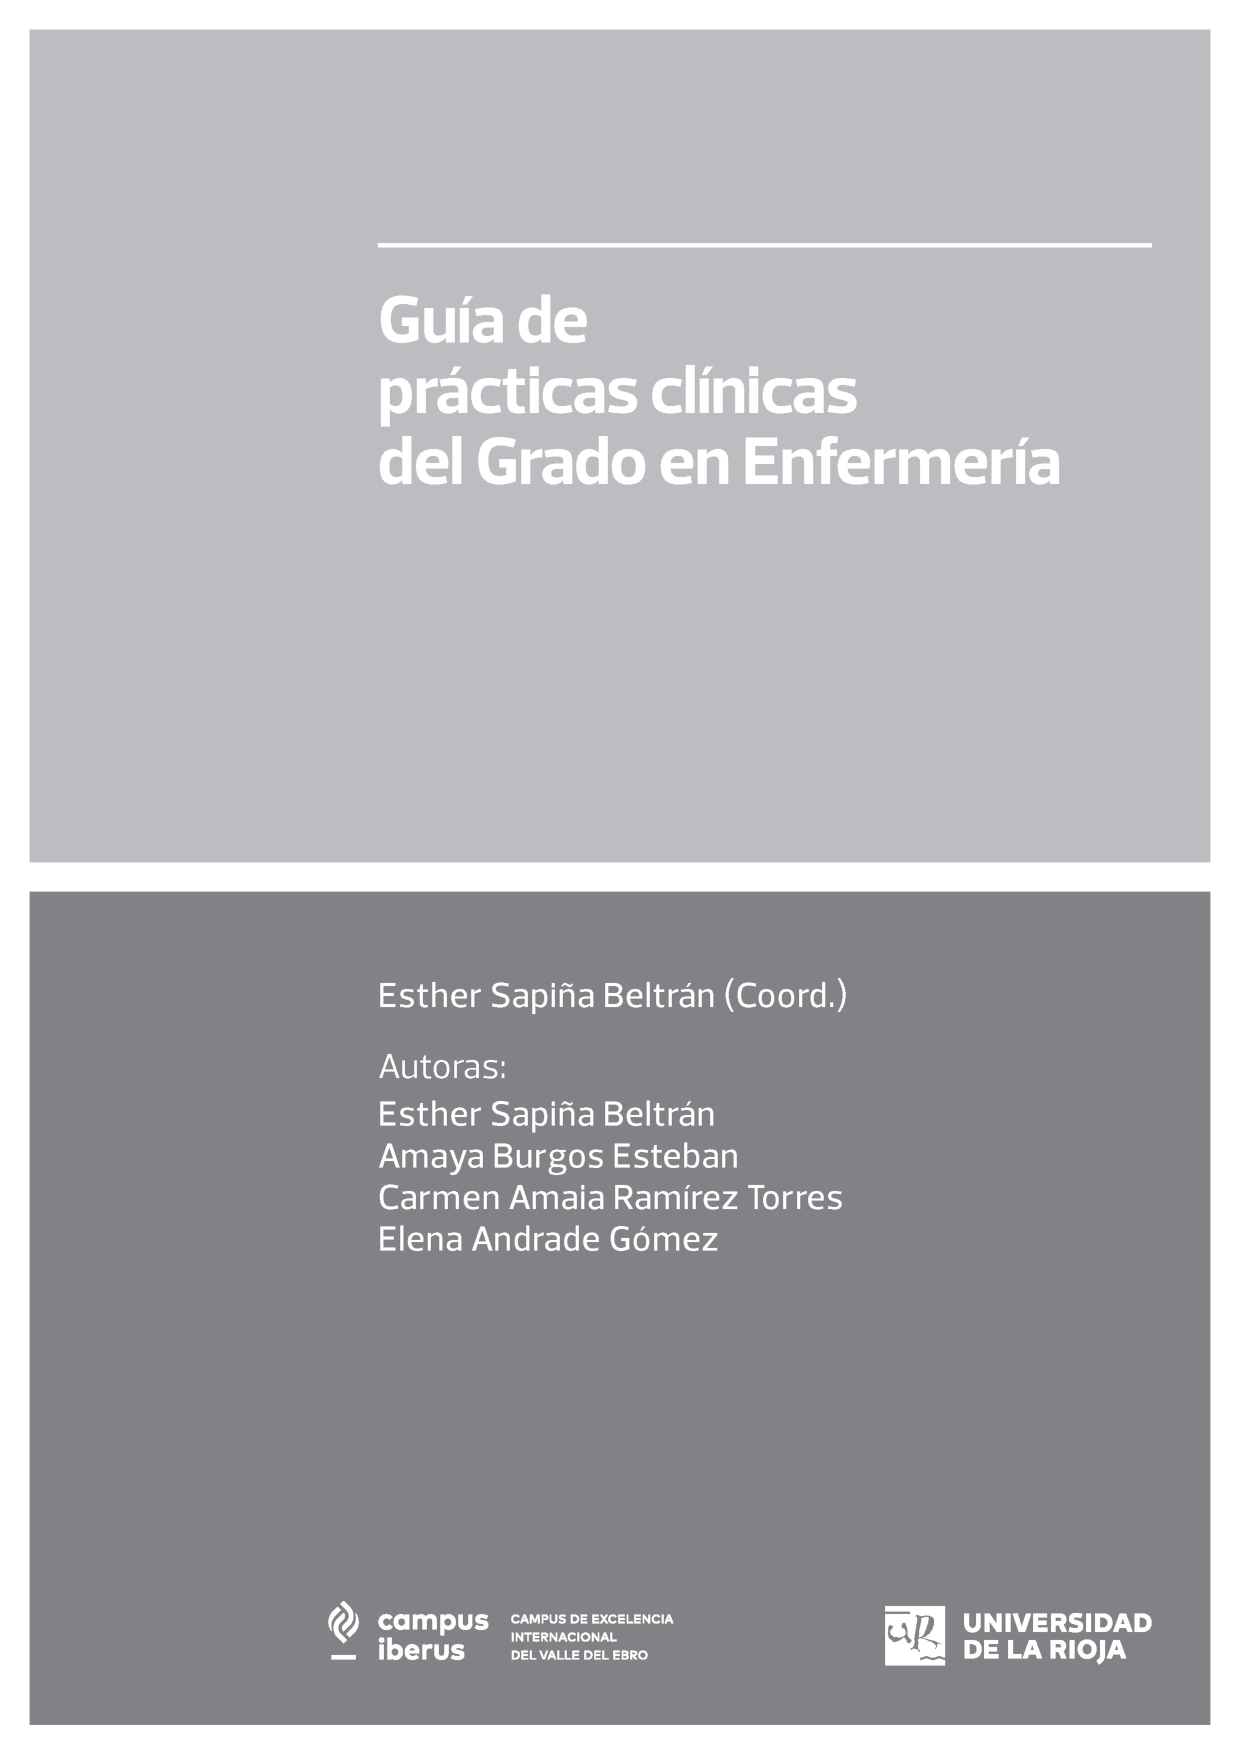 Imagen de portada del libro Guía de prácticas clínicas del Grado en Enfermería